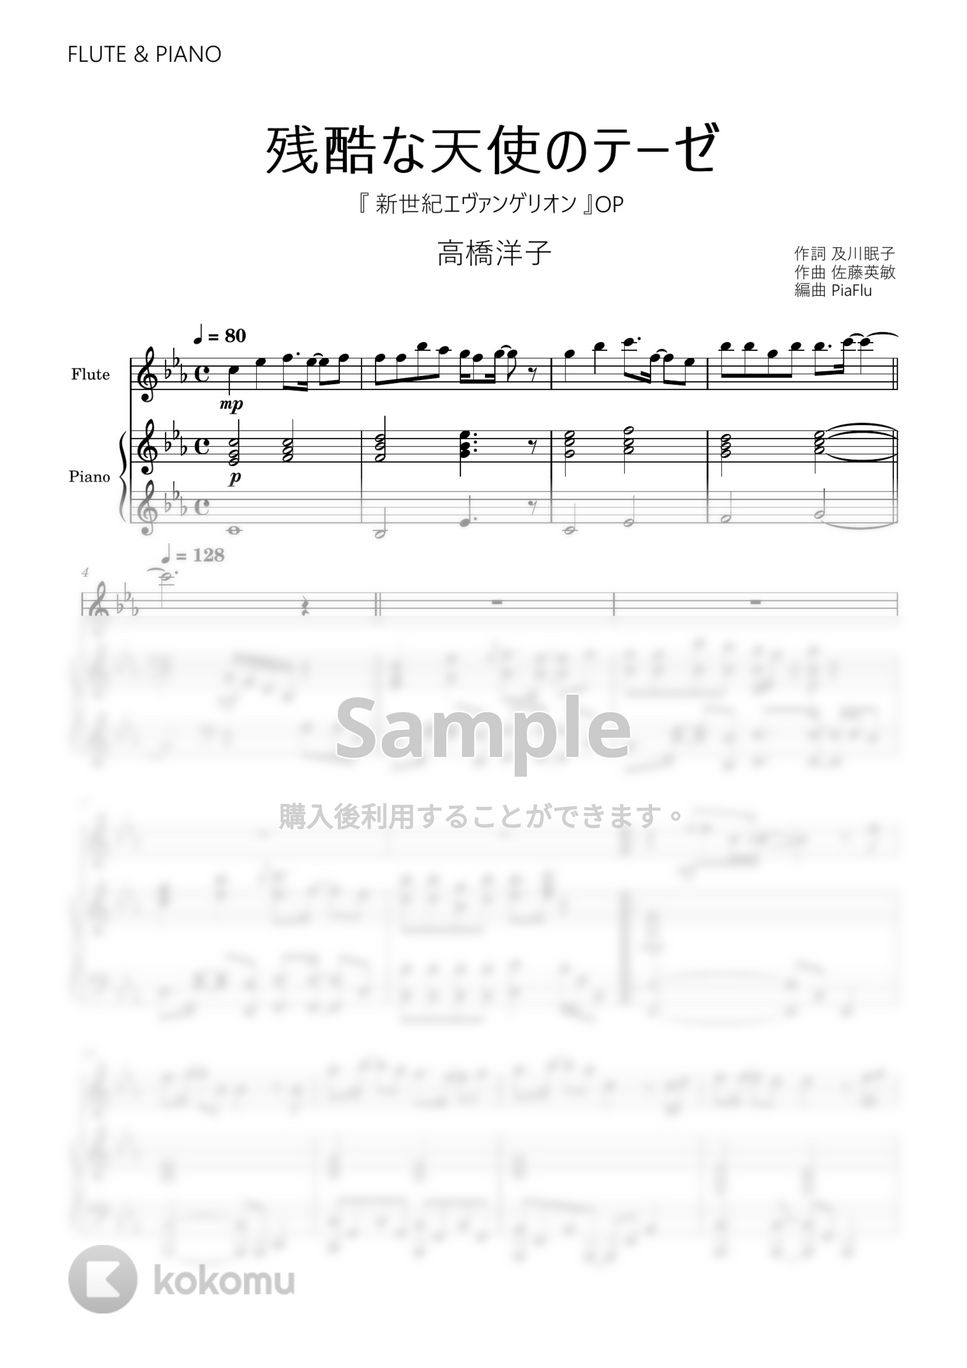 新世紀エヴァンゲリオン - 残酷な天使のテーゼ / 高橋洋子 (フルート&ピアノ伴奏) by PiaFlu